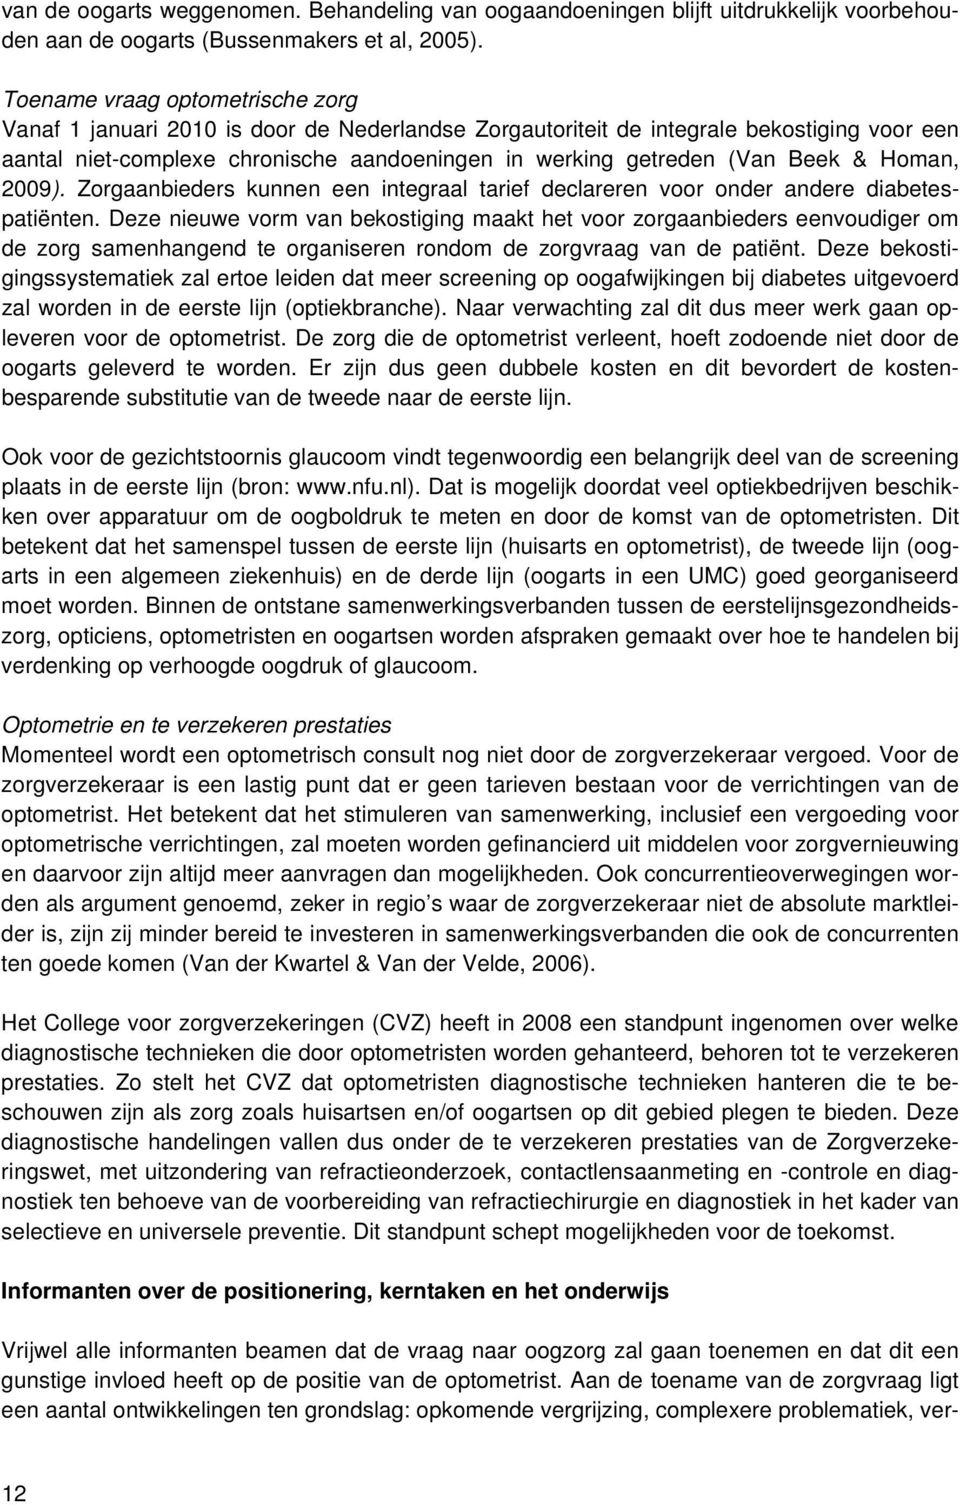 Beek & Homan, 2009). Zorgaanbieders kunnen een integraal tarief declareren voor onder andere diabetespatiënten.